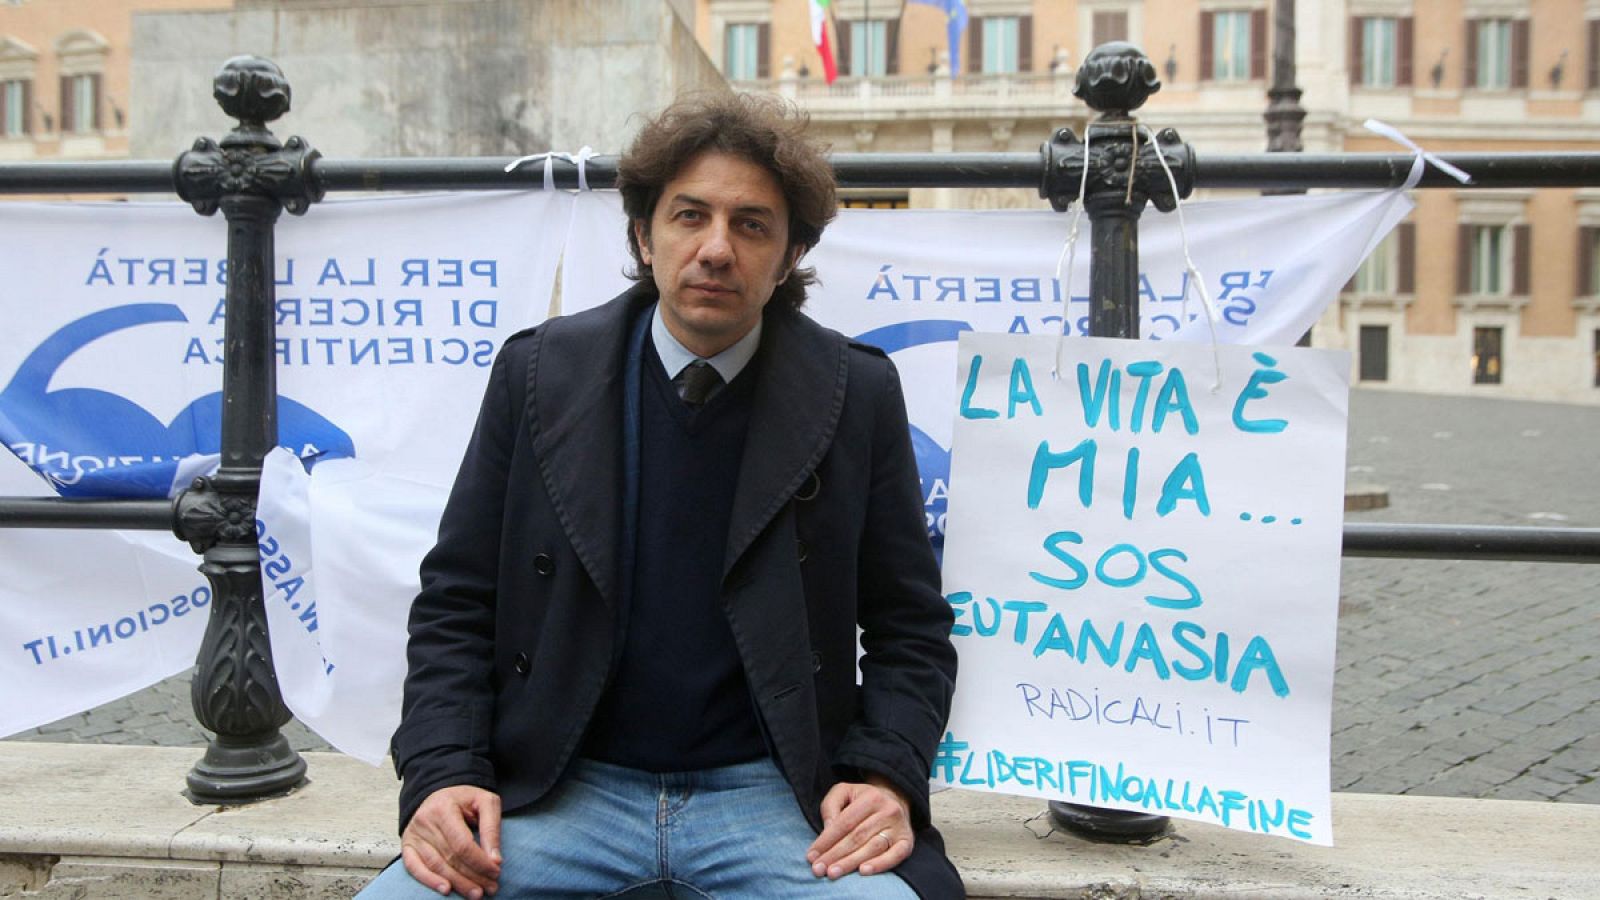 Marco Cappato, activista de la asociación Coscioni, protesta a favor de la ley del testamento vital